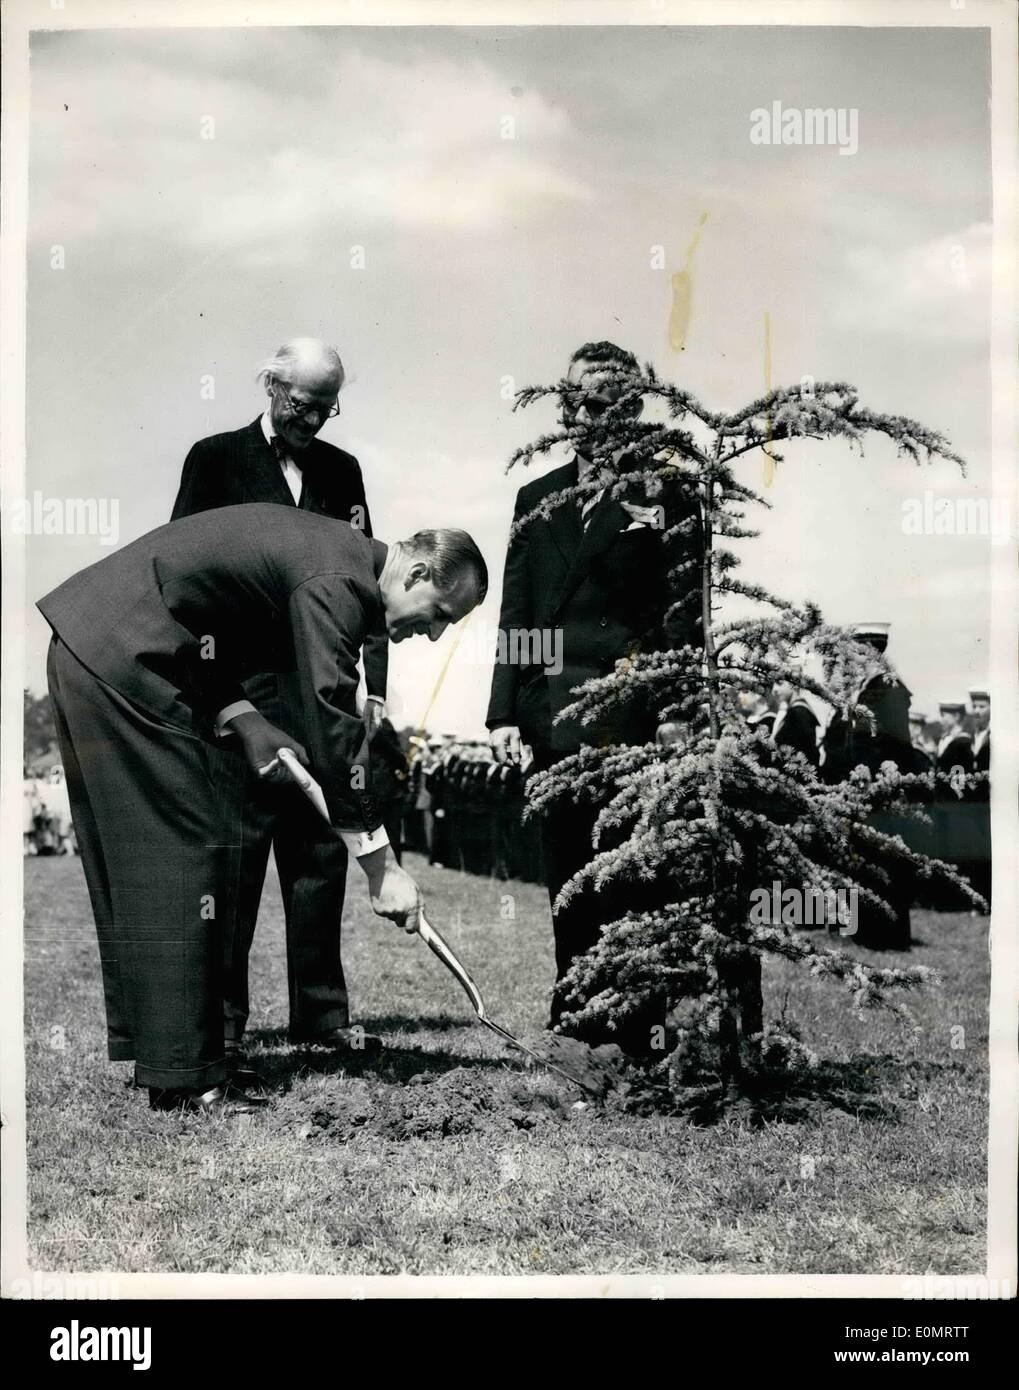 Juin 06, 1956 - Le duc d'Édimbourg ouvre un nouveau terrain de jeu : Le duc d'Édimbourg a volé ce matin par hélicoptère pour ouvrir le nouveau monument commémoratif de guerre de concurrence équitables au Burpham, près de Guildford. Le champ est appelé ''La Sutherland Jeu'' à la mémoire de l'homme de Burpham qui ont donné leur vie au cours de la seconde guerre mondiale, 1939-1945. La photo montre le duc d'Édimbourg plante un arbre pour commémorer l'ouverture du nouveau jeu. Banque D'Images